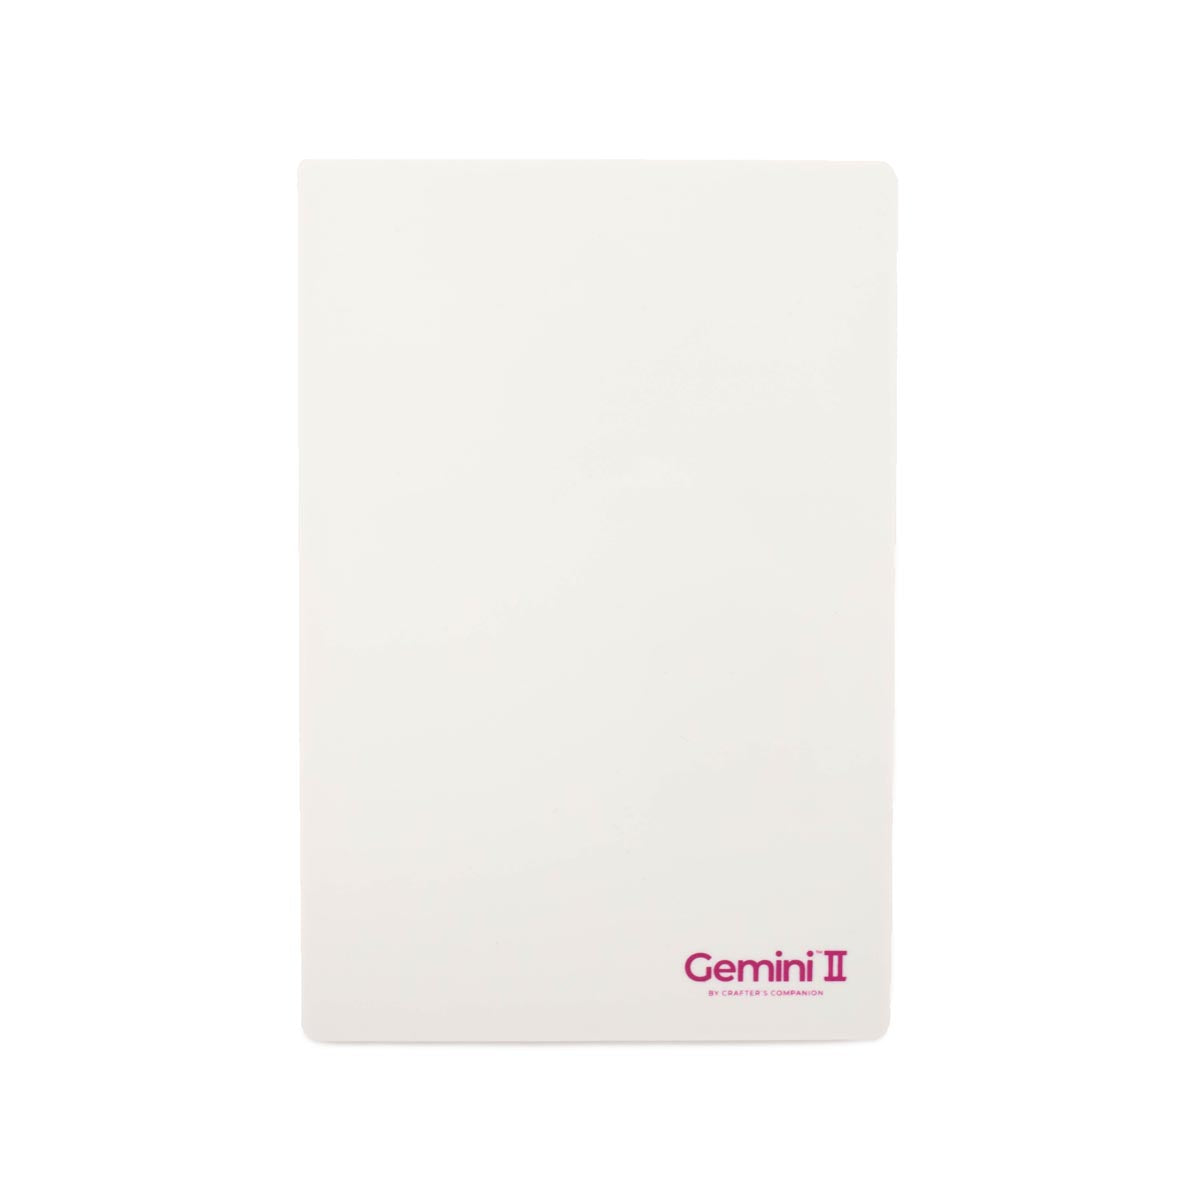 Crafter's Companion - Gemini II Accessori - Shim di plastica 9 "x12.5"